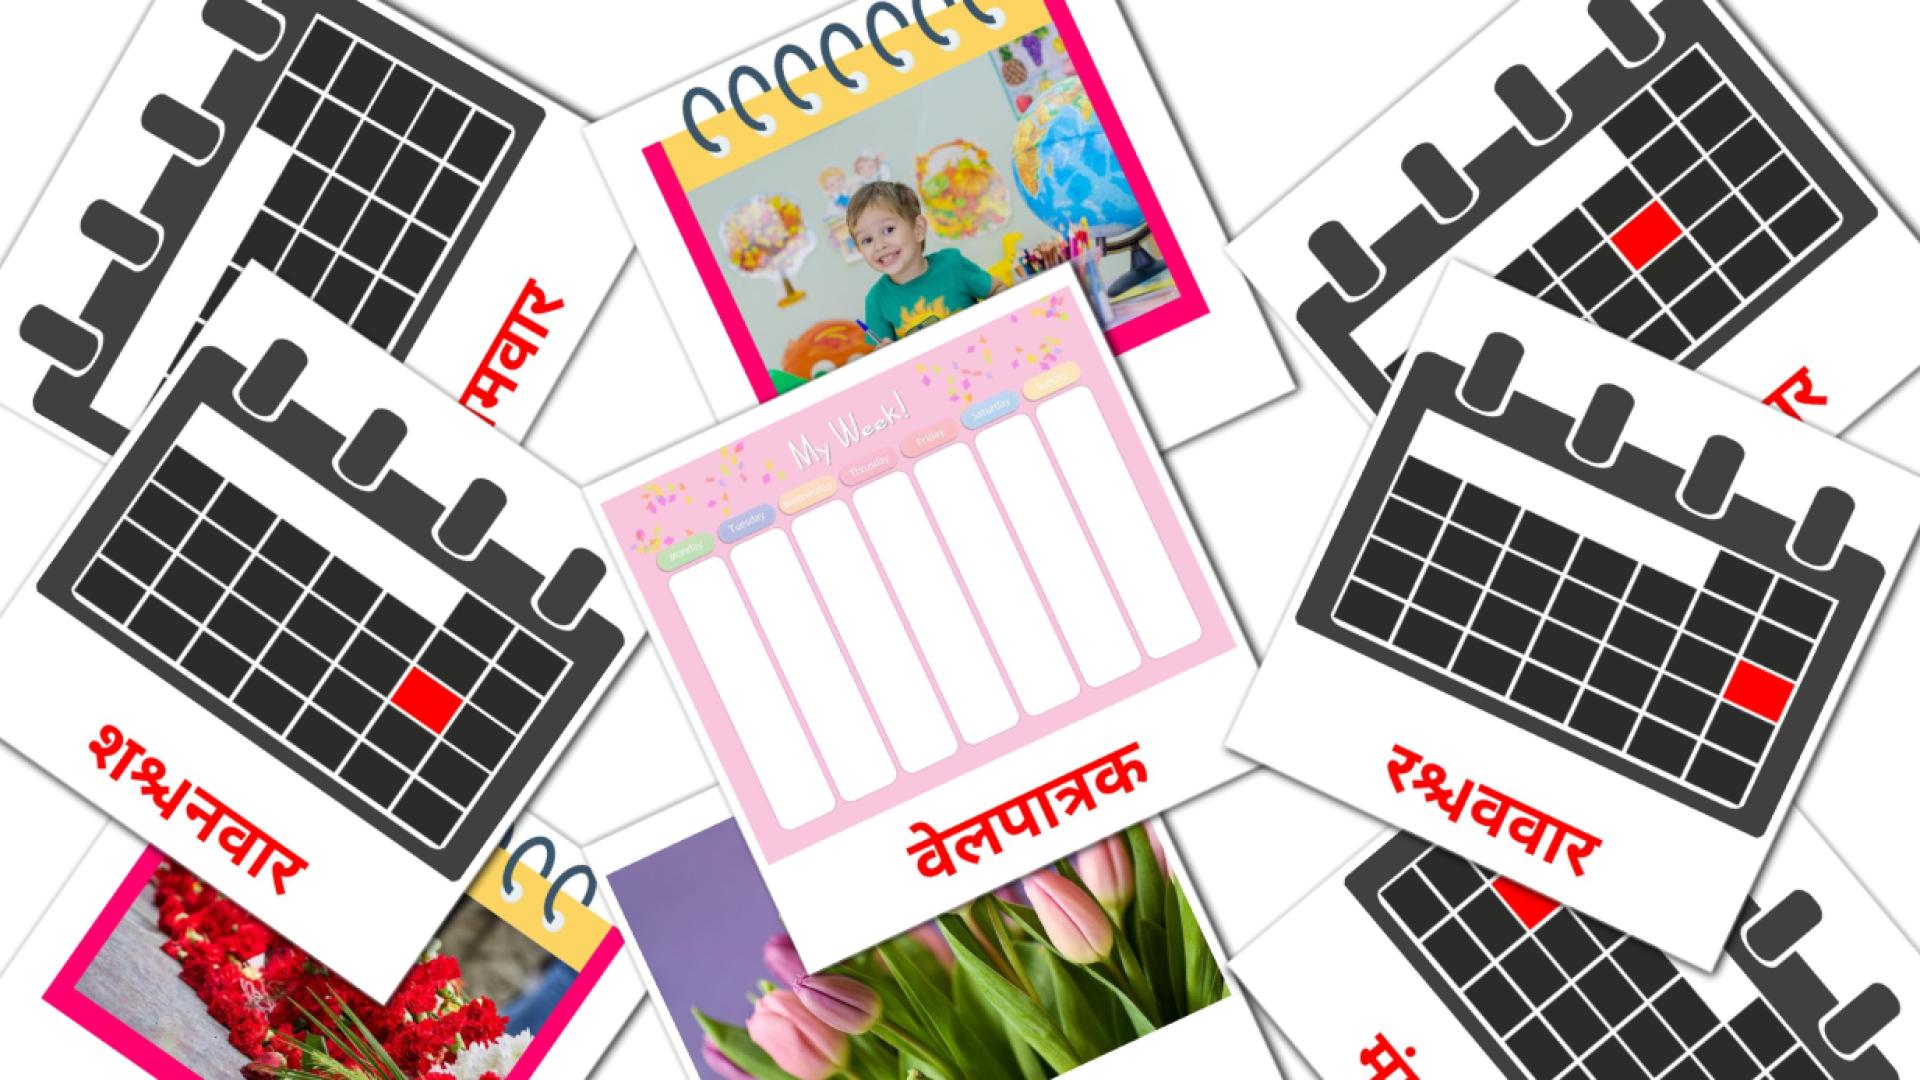 दिनदर्शिका marathi vocabulary flashcards